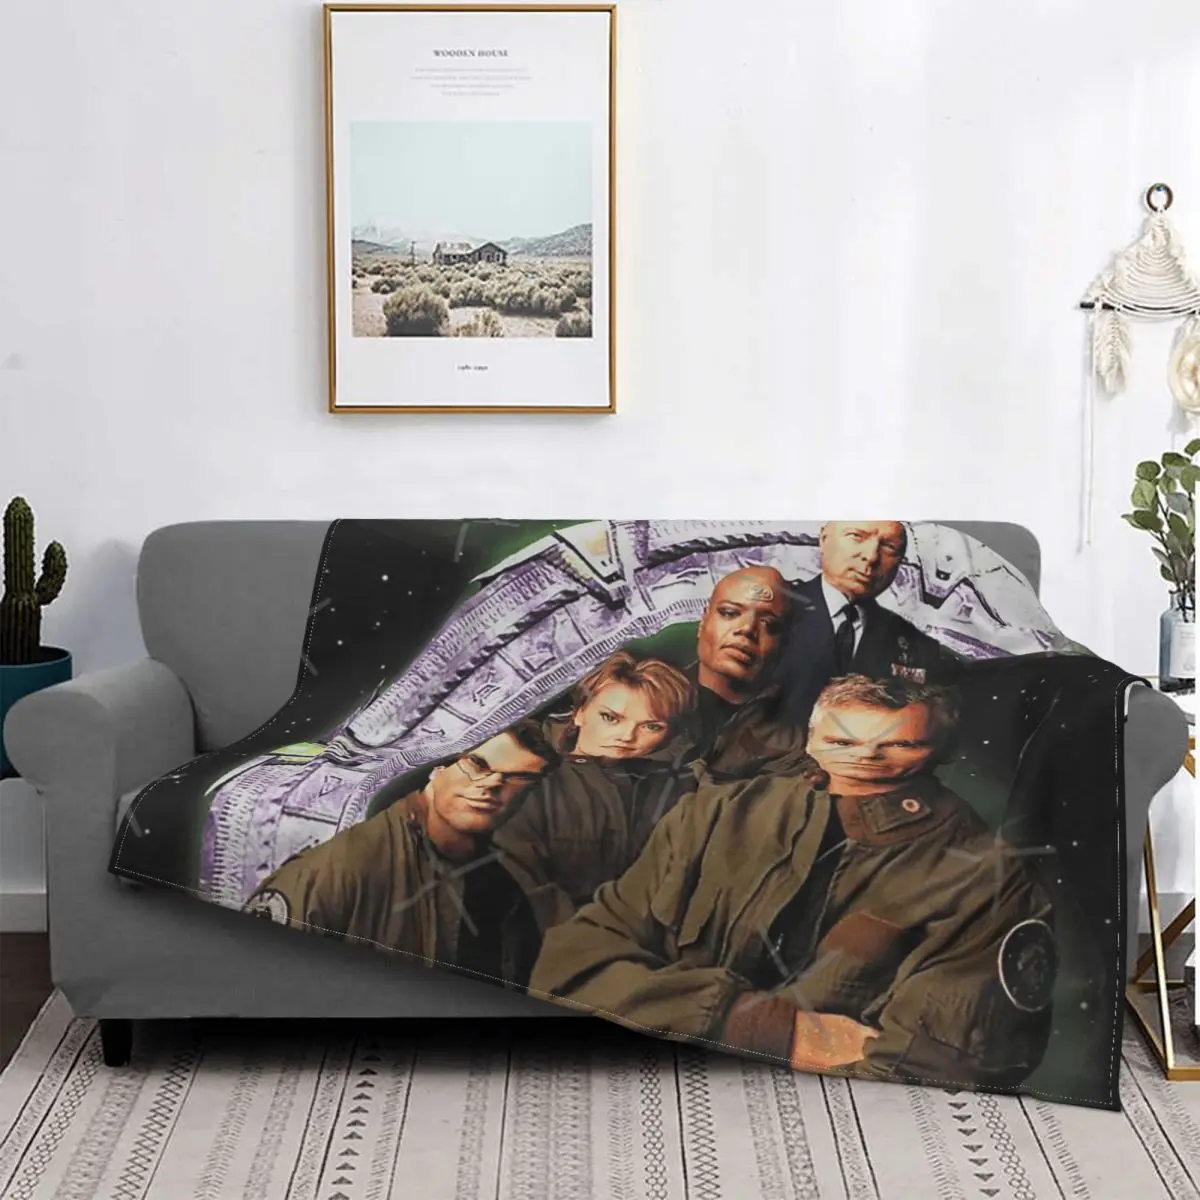 

Stargate Sg1-2 mantas para cama, cubrecama a cuadros, sofá, funda de playa, manta de lana, textil de lujo para el hogar